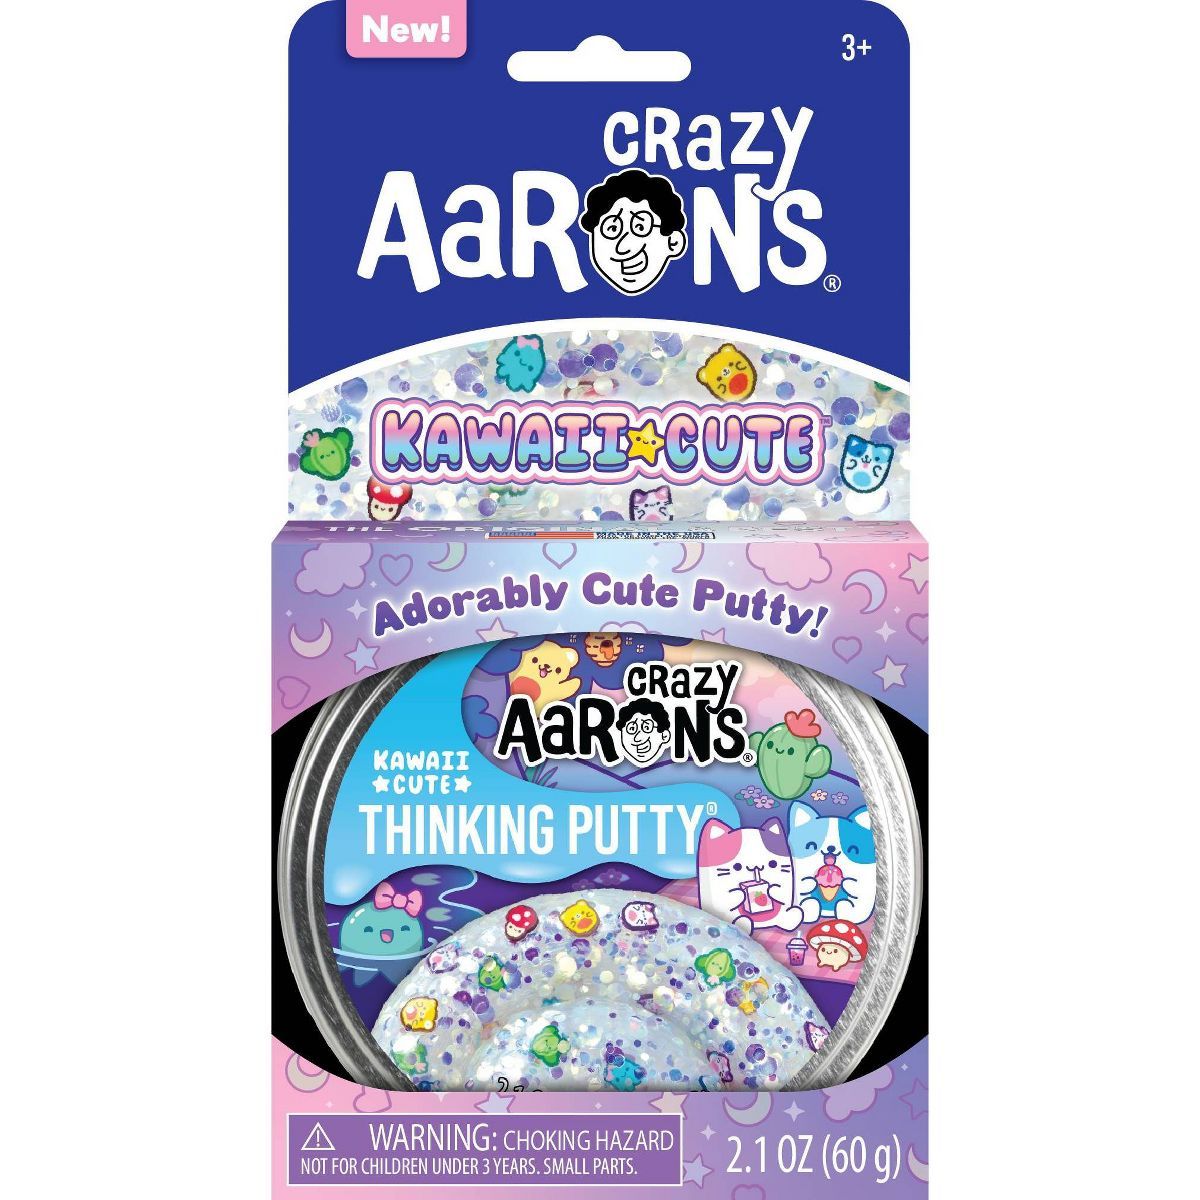 Crazy Aaron's Kawai Cute Putty | Target